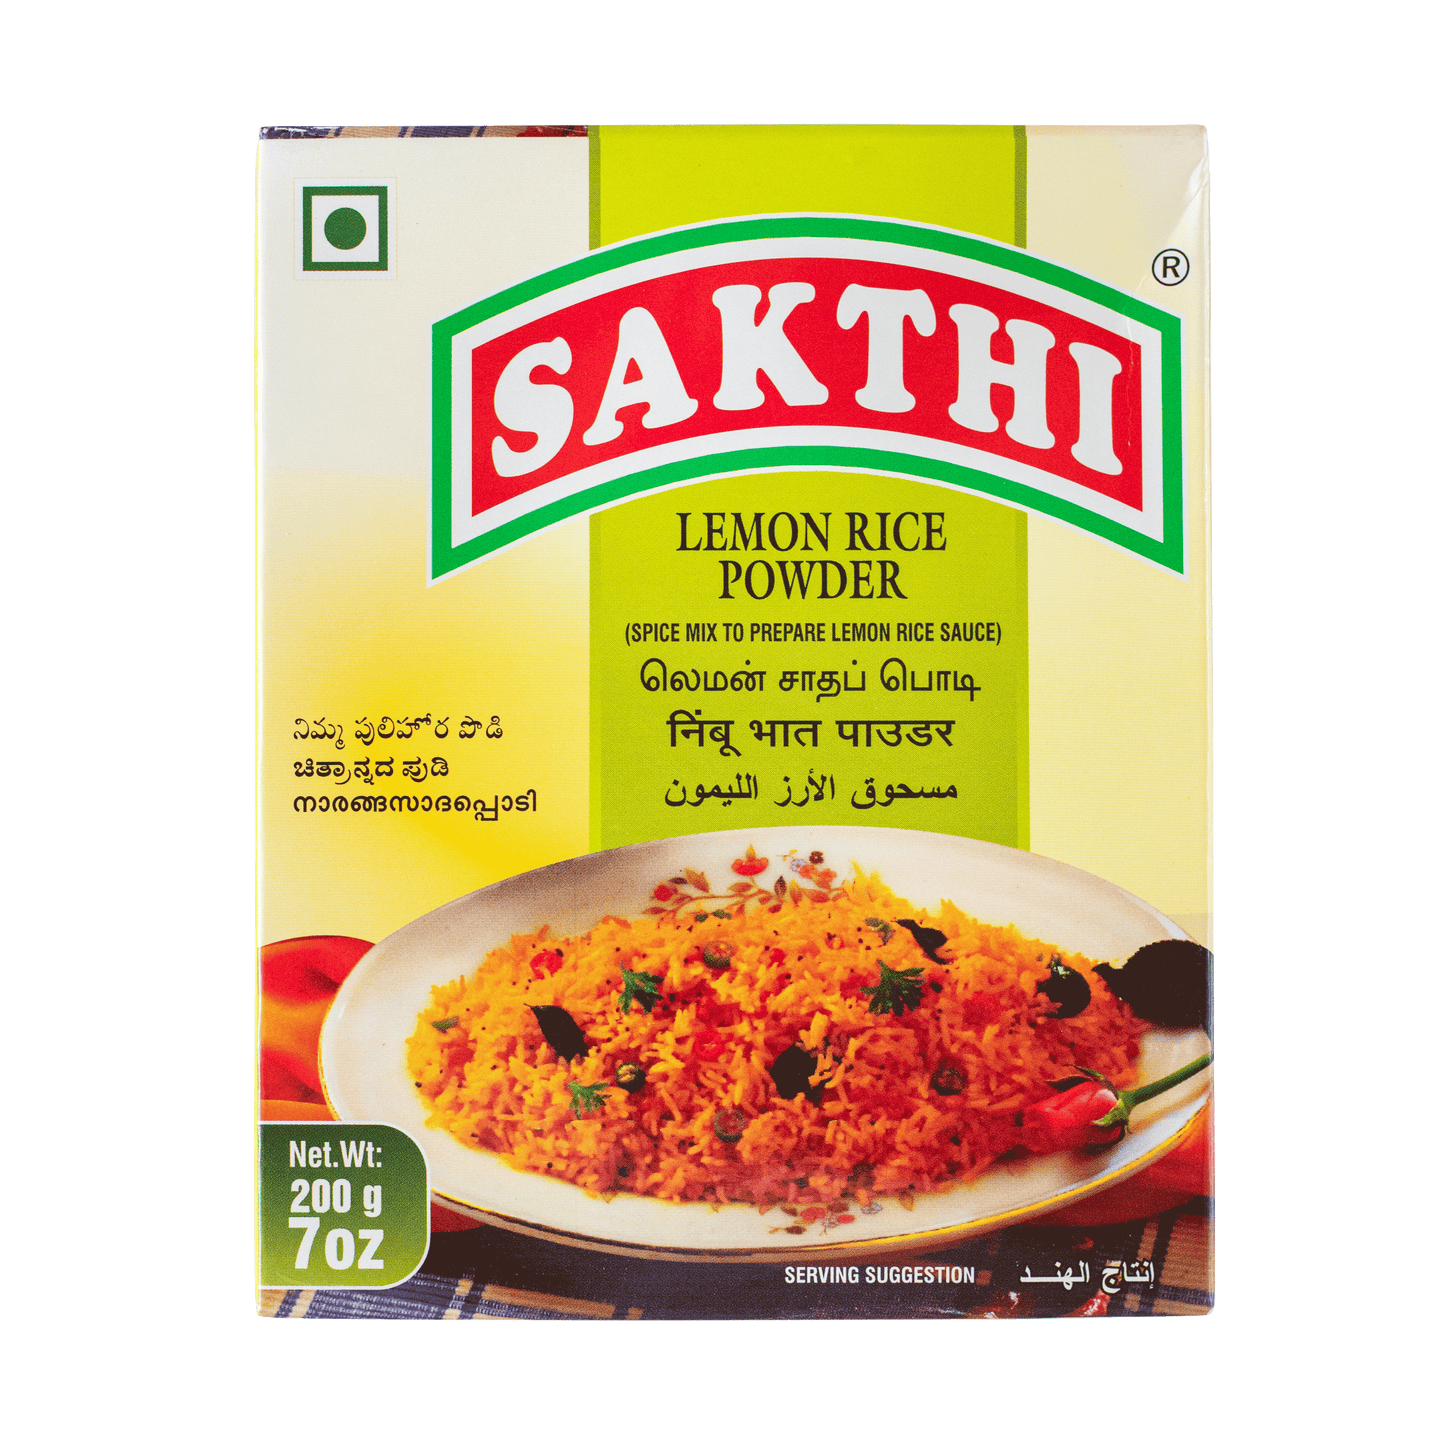 Sakthi Lemon Rice Powder 200g